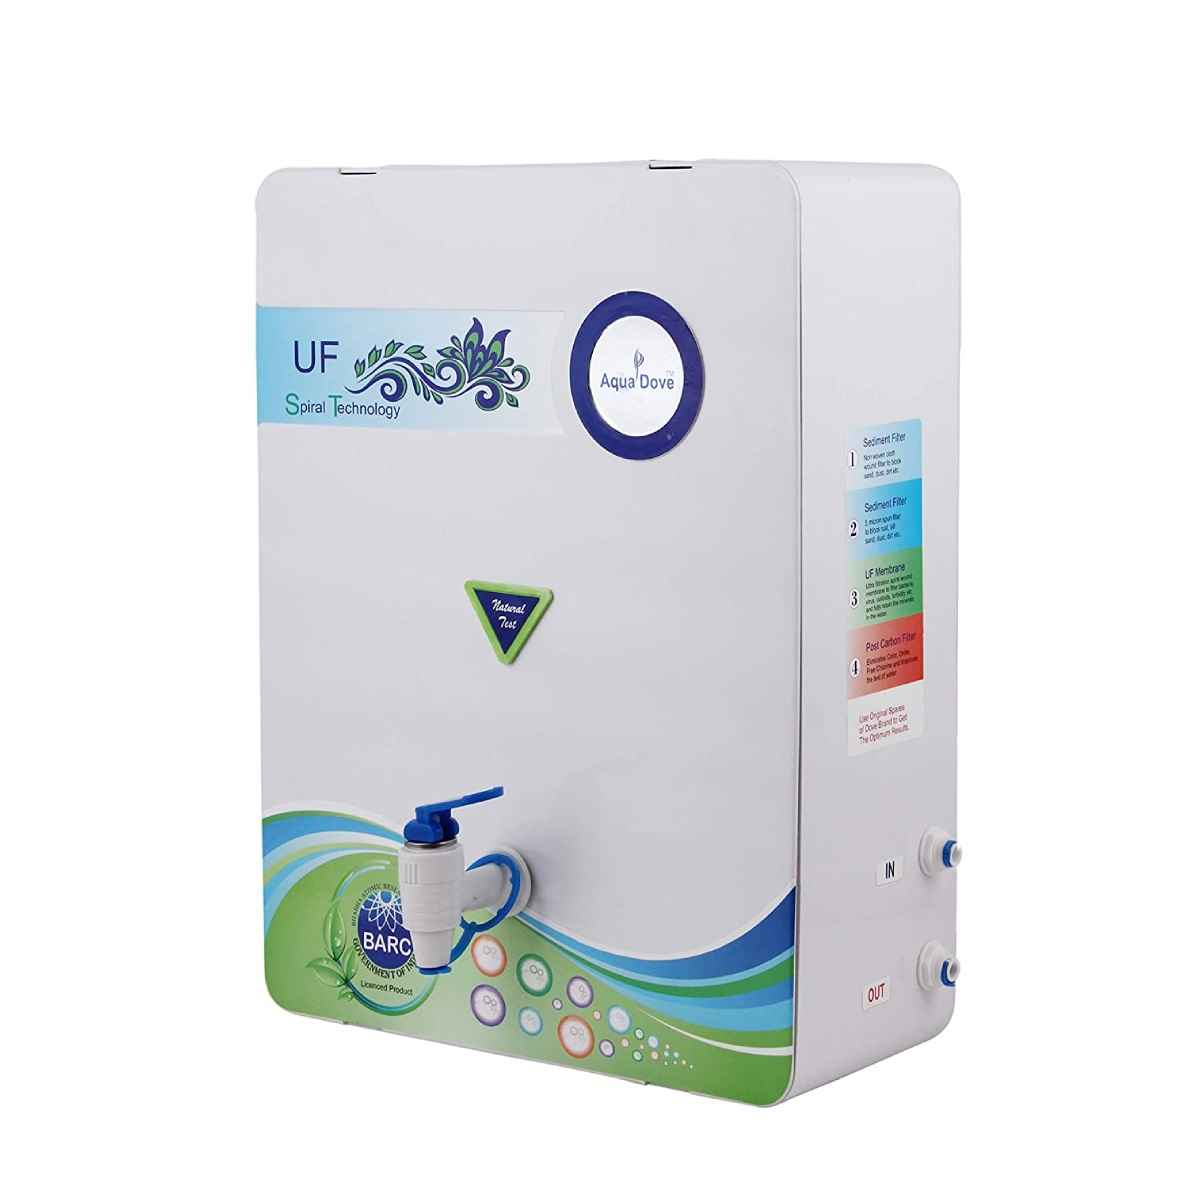 ಆಕ್ವಾ Dove non-electric Barc UF water purifier 